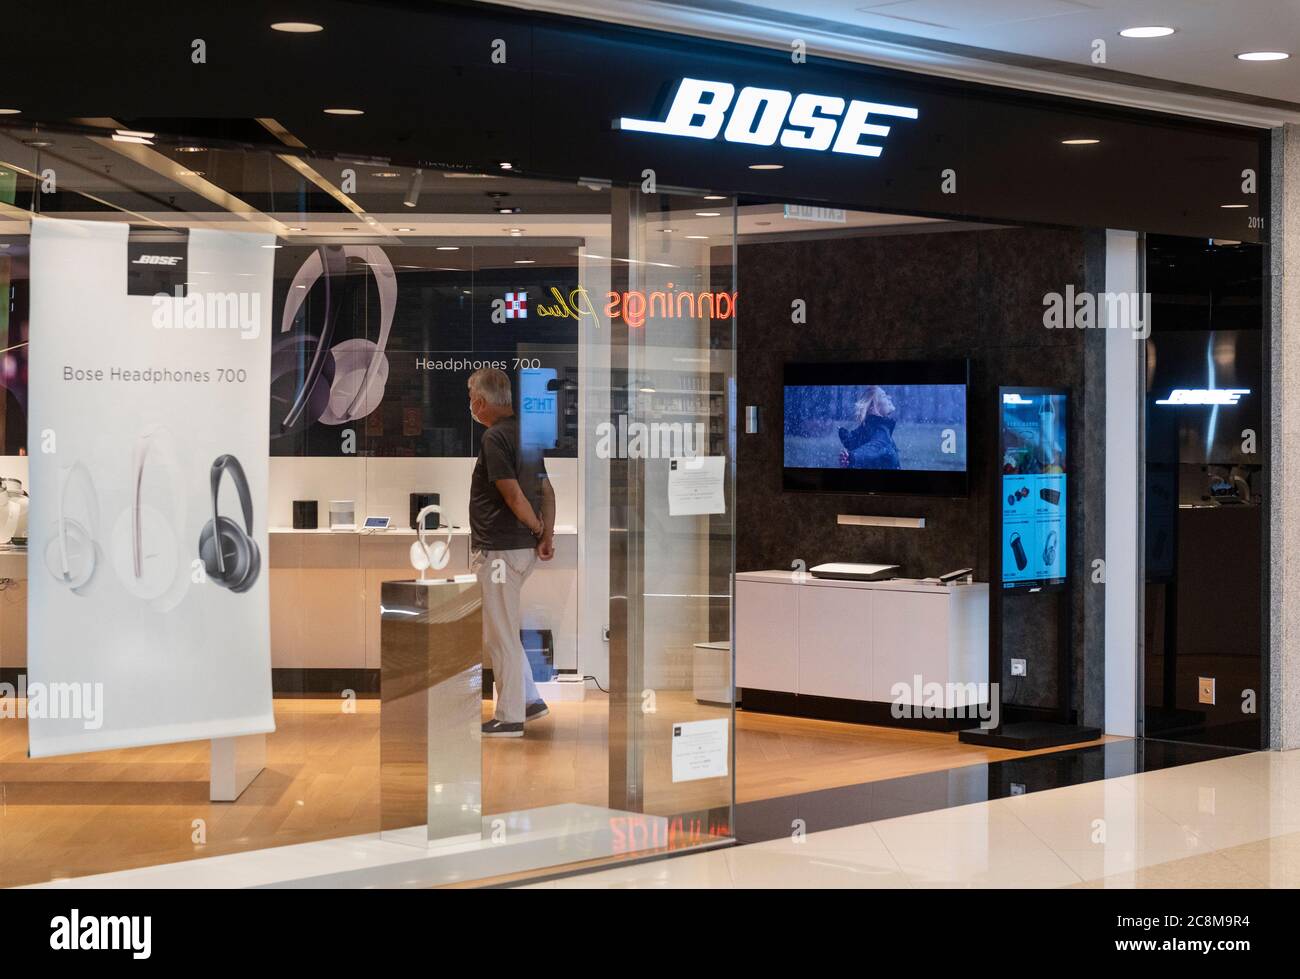 Bose shop -Fotos und -Bildmaterial in hoher Auflösung – Alamy